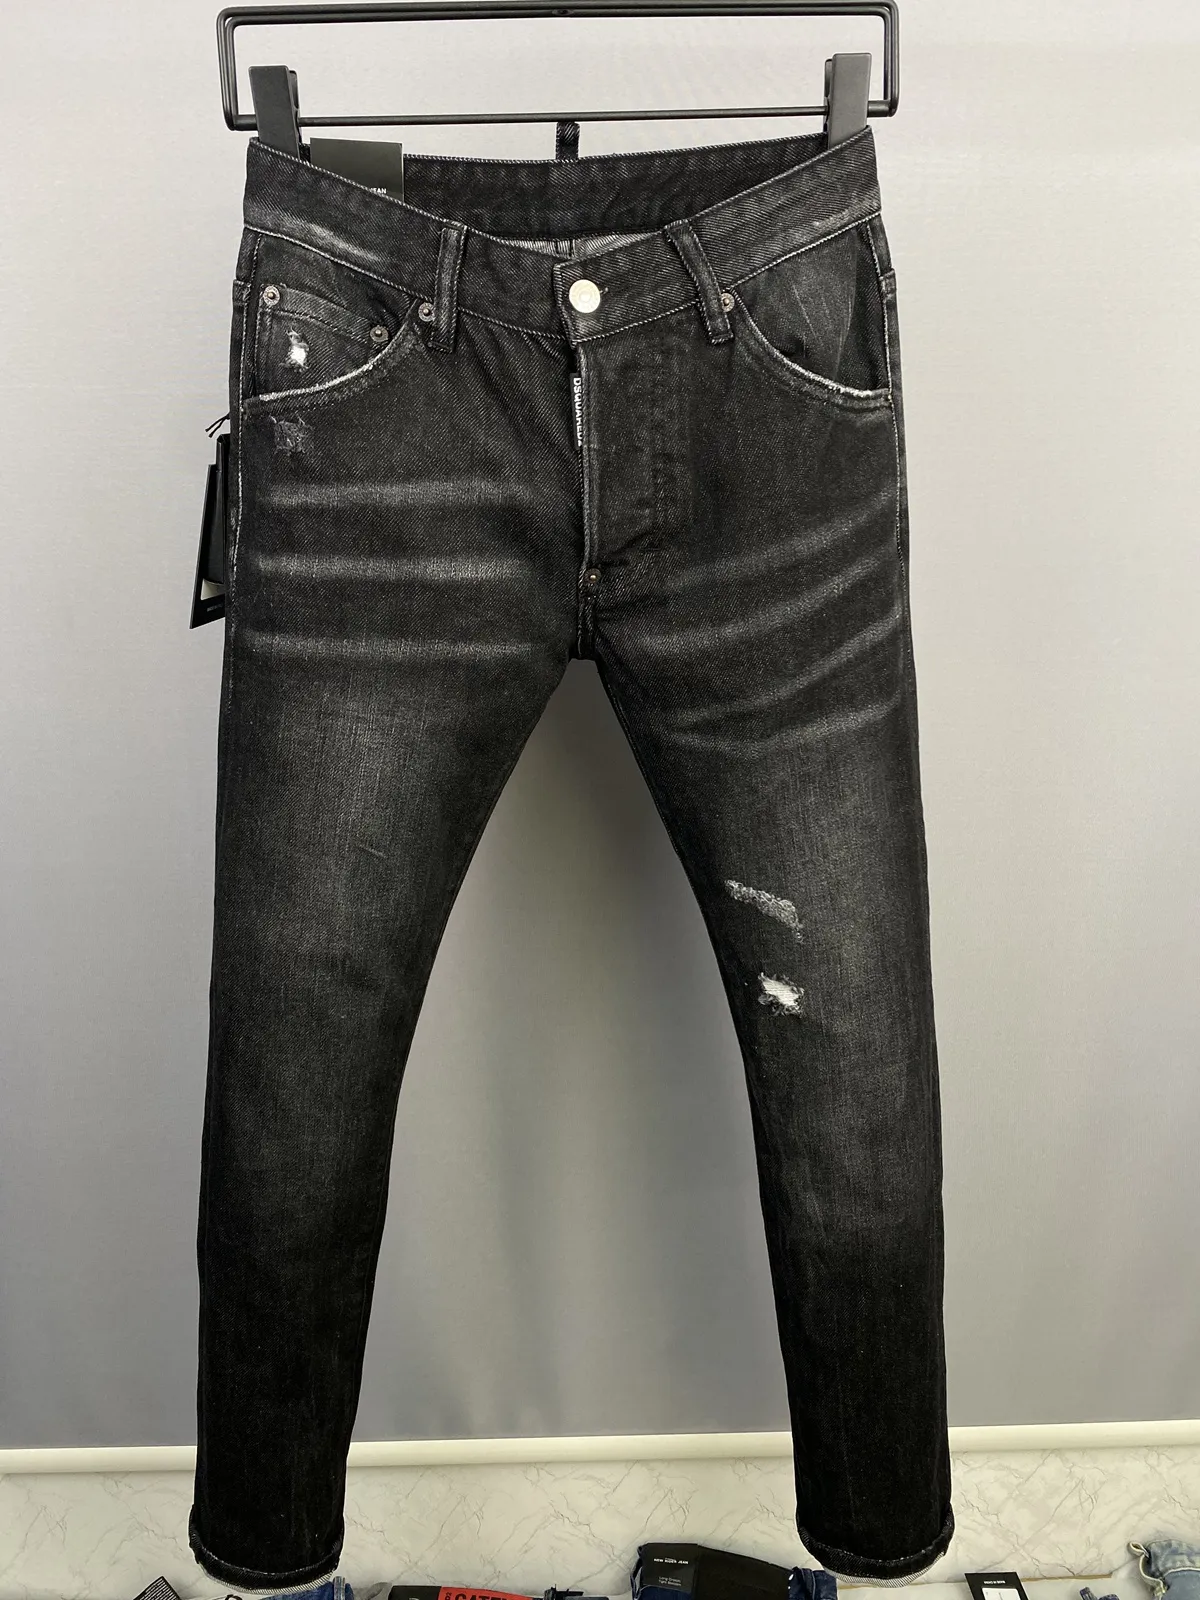 Итальянская мода европейские и американские мужские повседневные джинсы, высококачественная стирка, чистое ручное измельчение, оптимизация качества LA9833